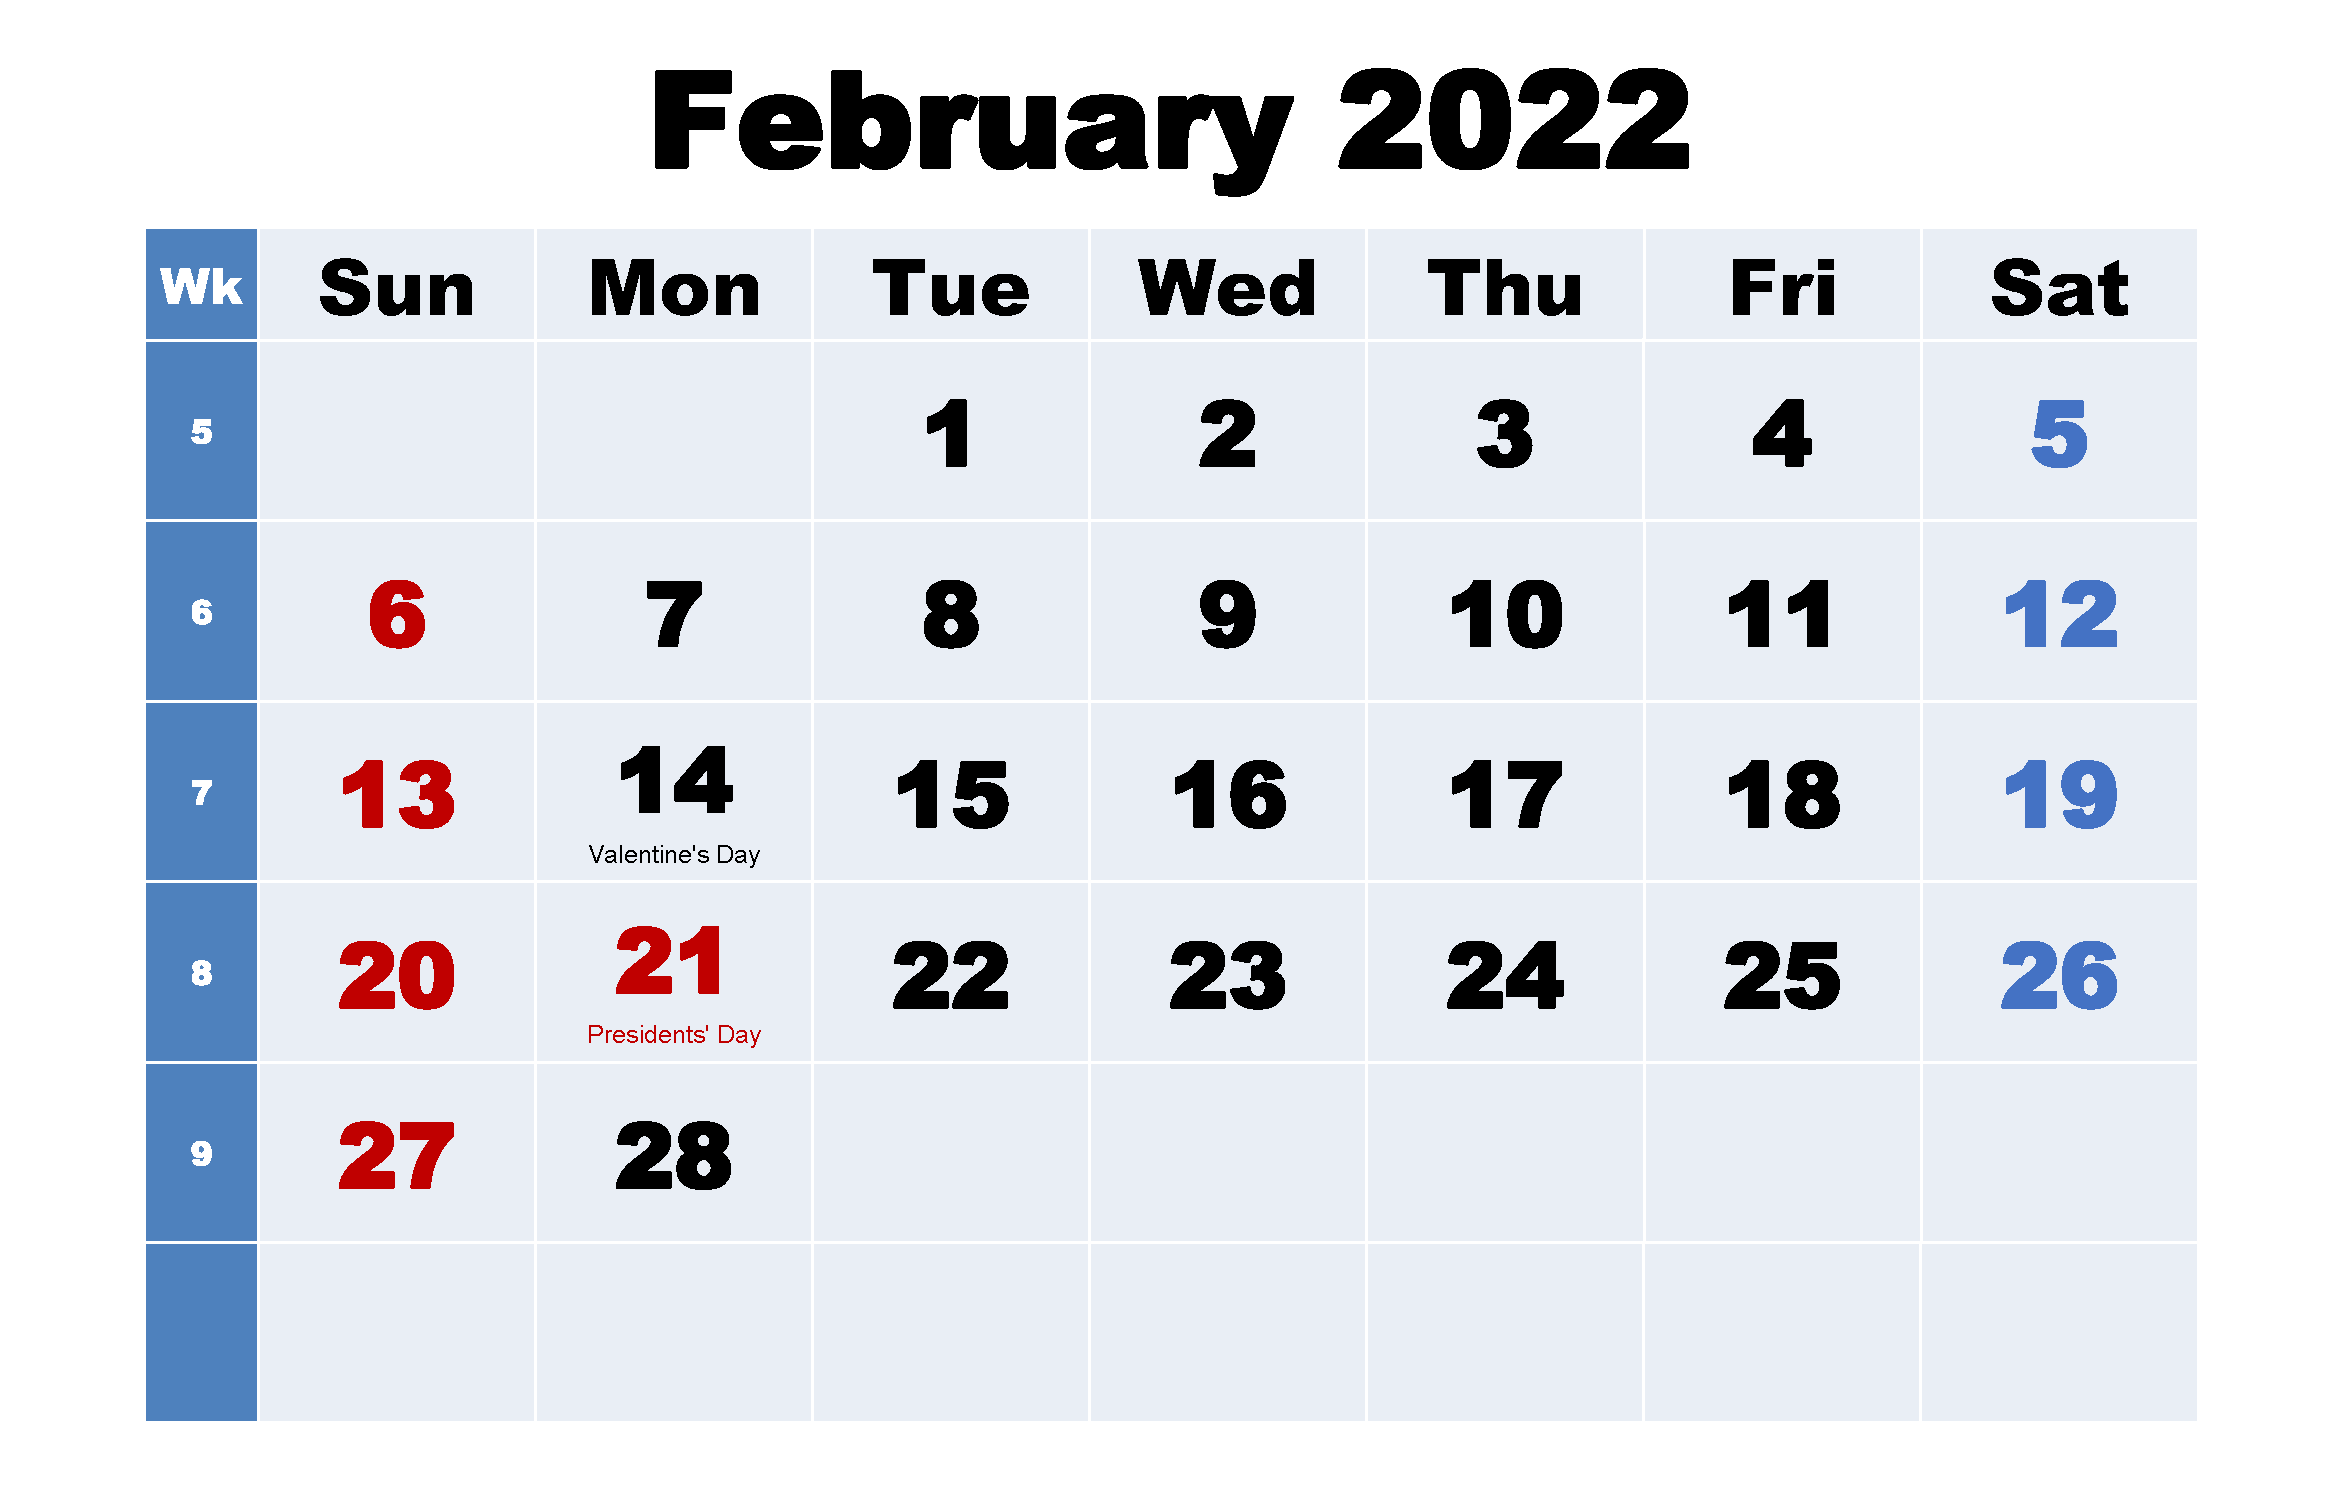 2022 February Holidays Calendar